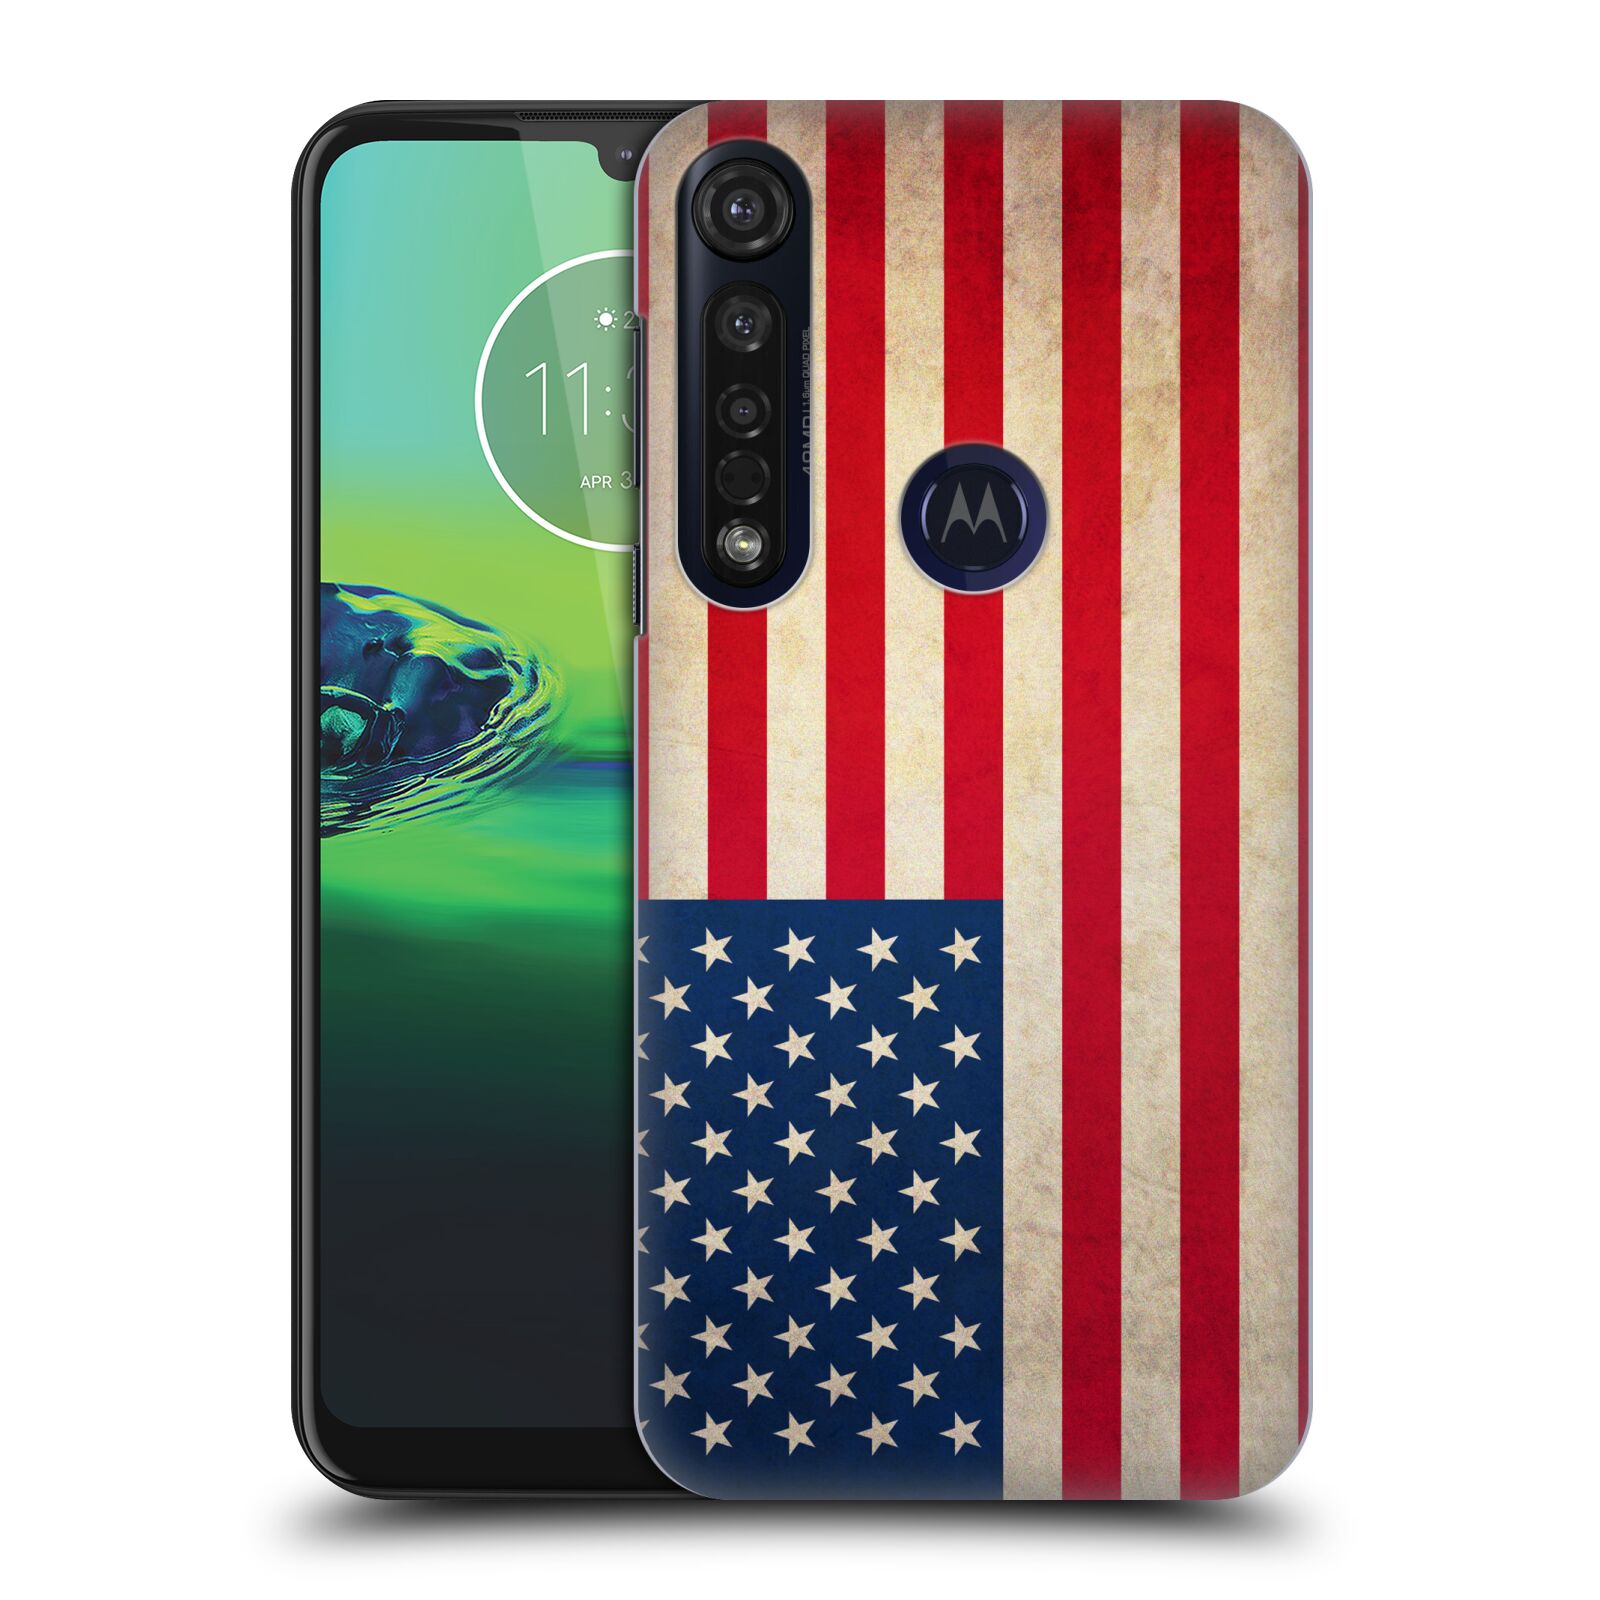 Pouzdro na mobil Motorola Moto G8 PLUS - HEAD CASE - vzor VINTAGE VLAJKY SPOJENÉ STÁTY USA